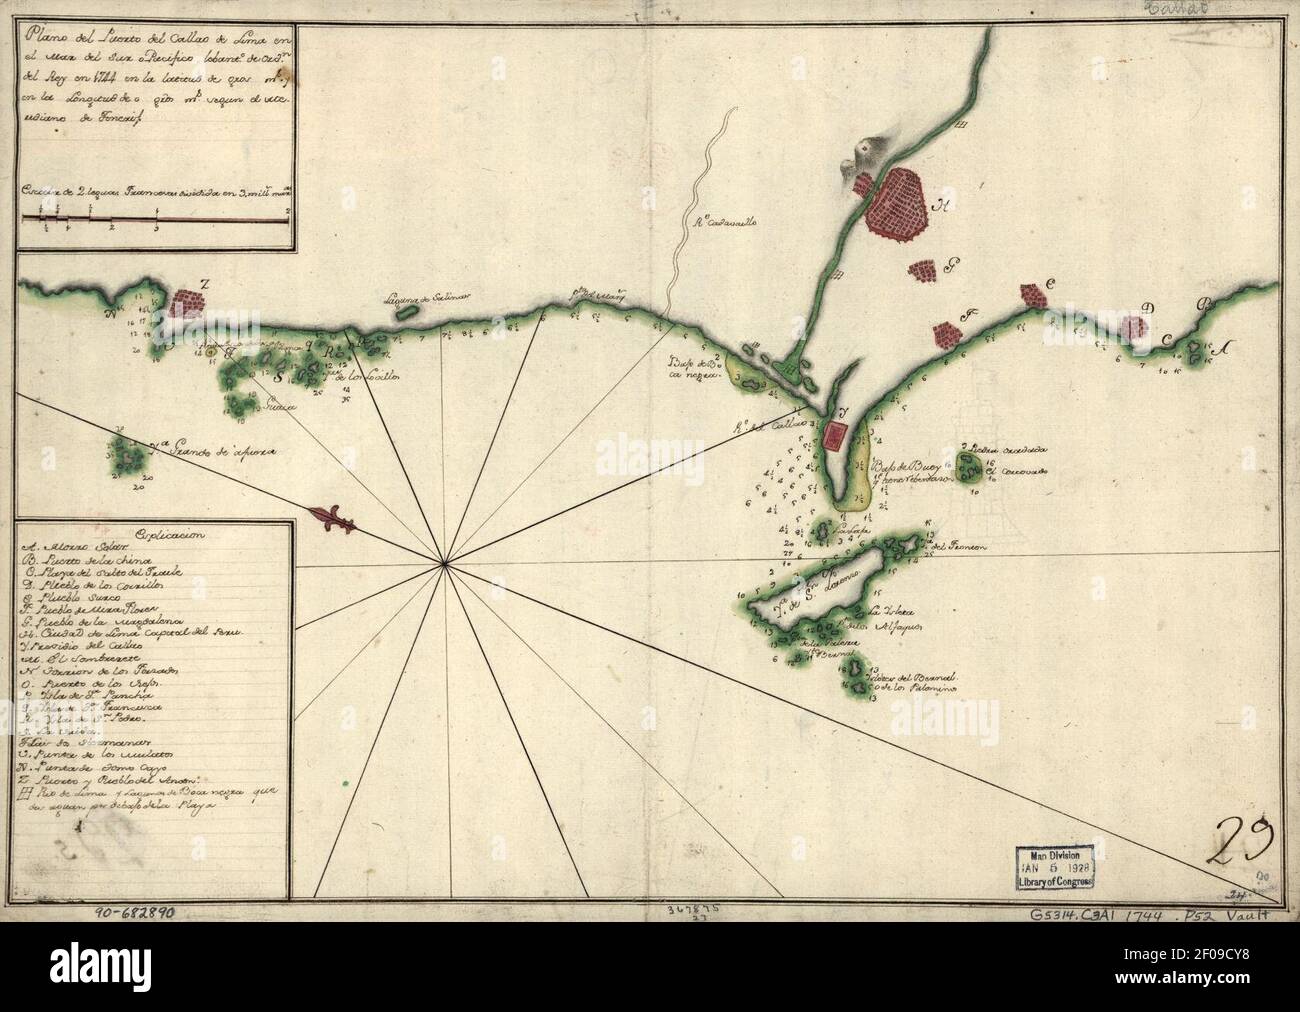 Plano del Puerto del Callao de Lima en el mar del sur o Pacífico lebanto. de ordn. del Rey en 1744 en la latitud de (blank) gros (blank) ms. y en la longitud de o (blank) gros (blank) ms. segun el Stock Photo